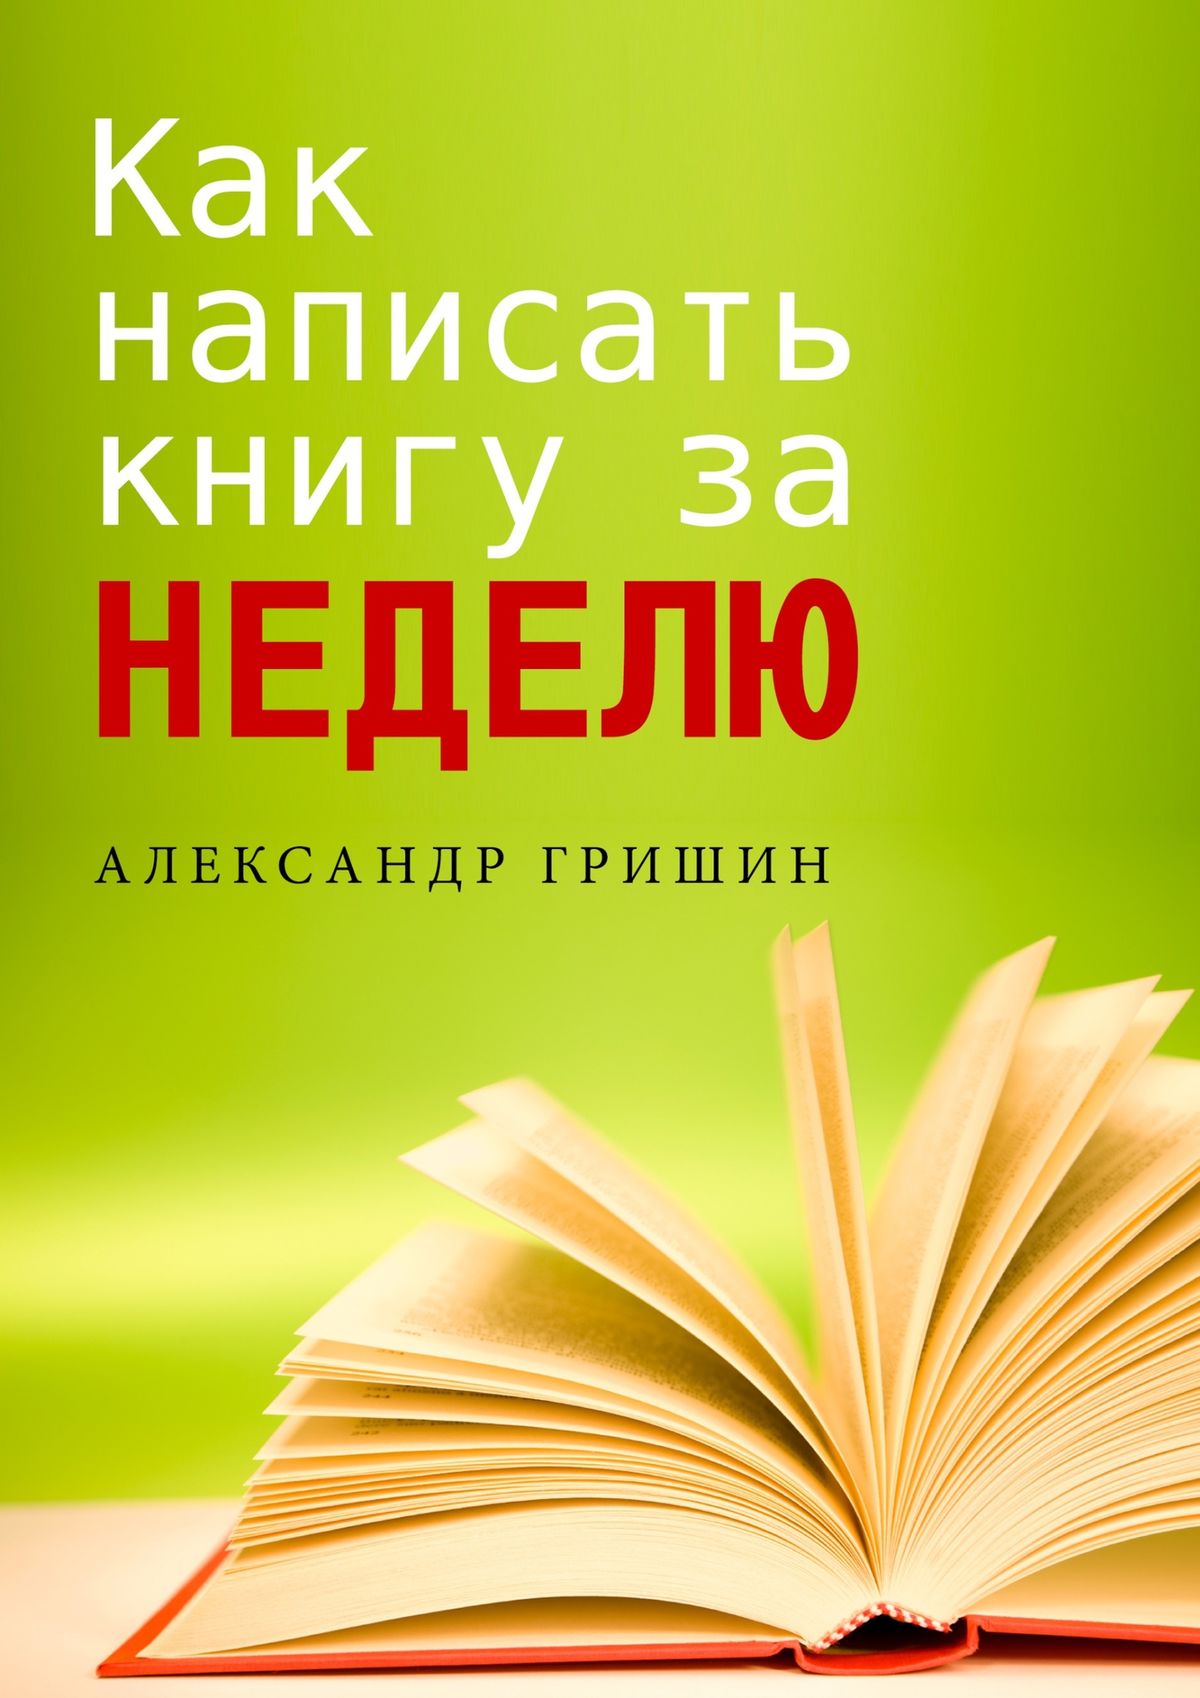 Книга  Как написать книгу за неделю созданная Александр Гришин может относится к жанру просто о бизнесе. Стоимость электронной книги Как написать книгу за неделю с идентификатором 9307399 составляет 488.00 руб.